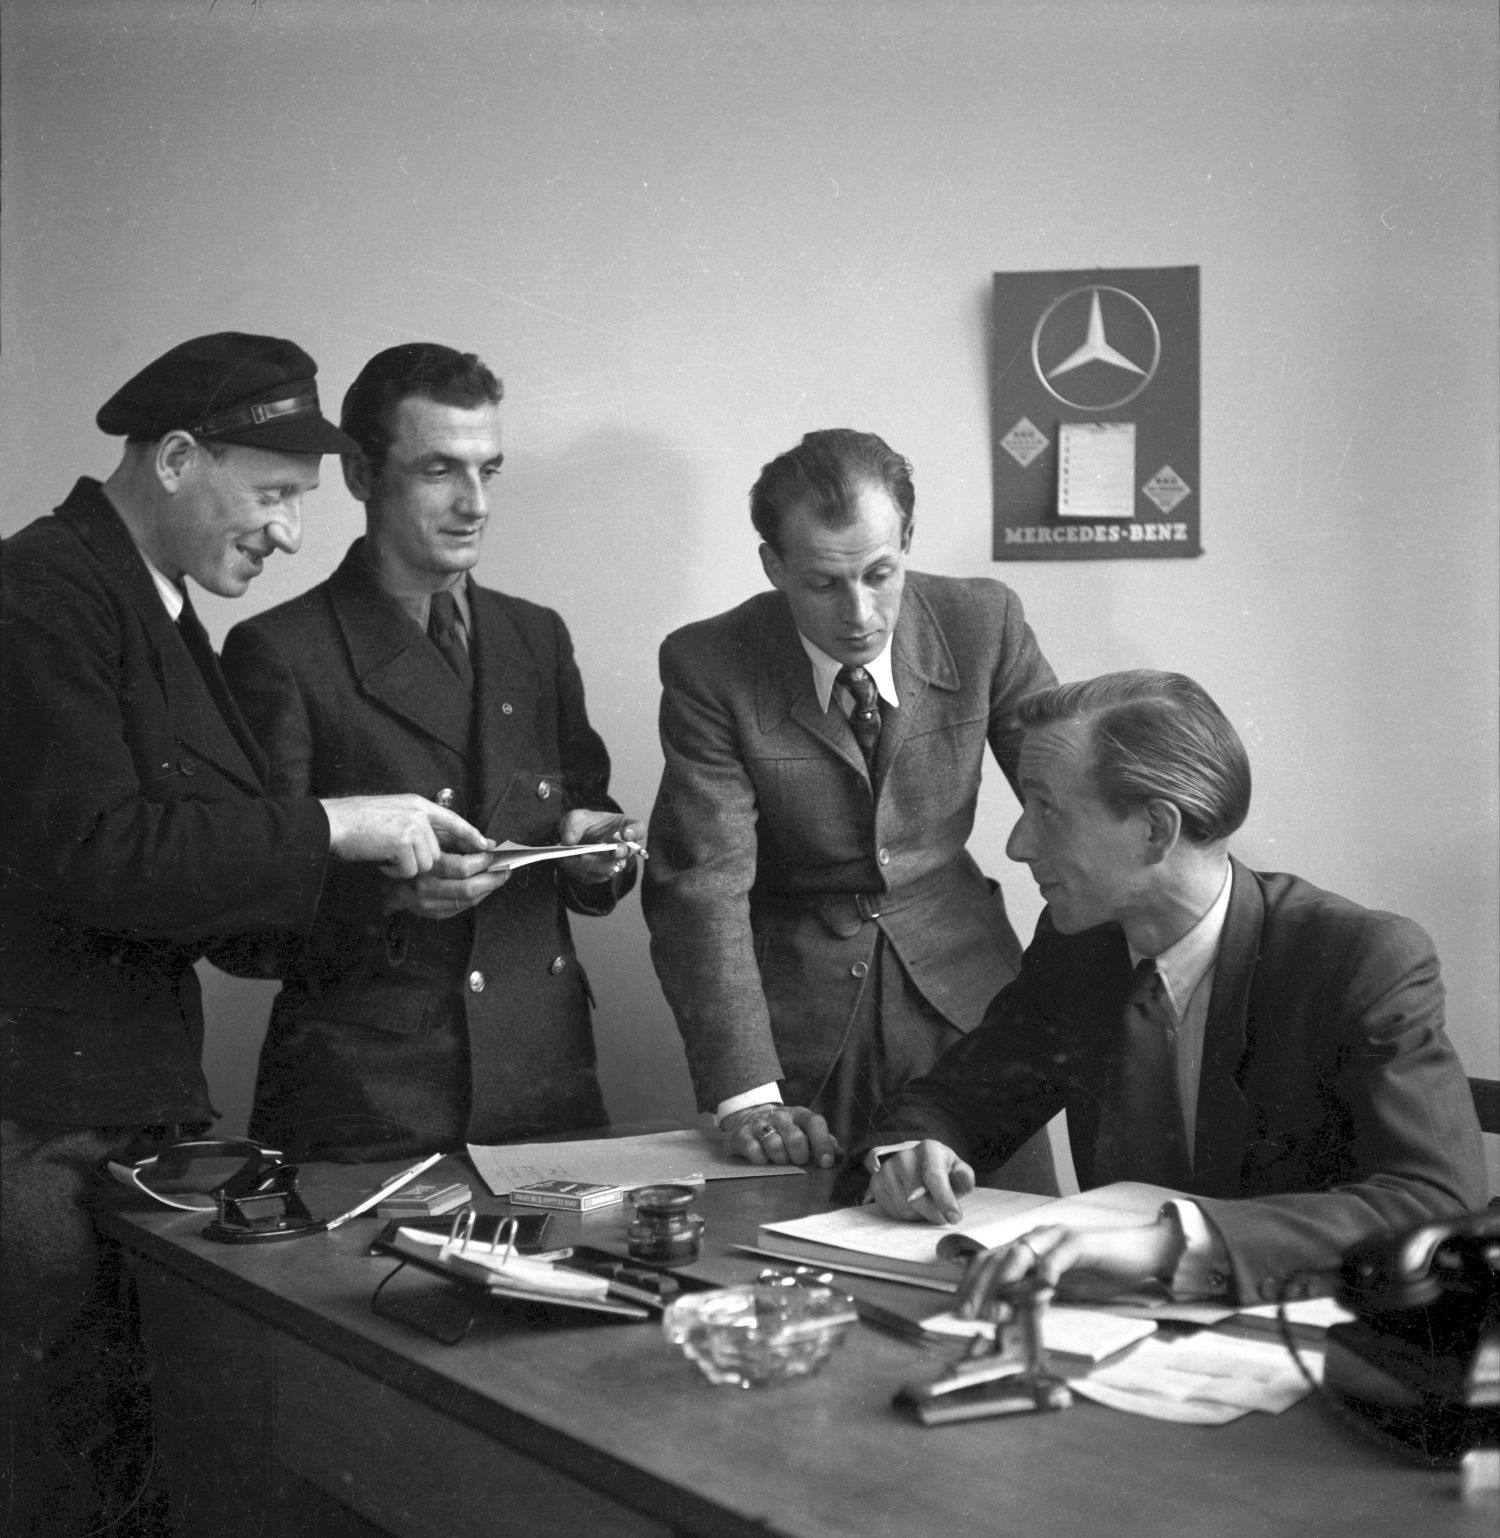 Auf dem historischen Foto sitzt ein Mann im Anzug an einem Schreibtisch, drei weitere stehen neben ihm. Sie scheinen etwas zu besprechen.